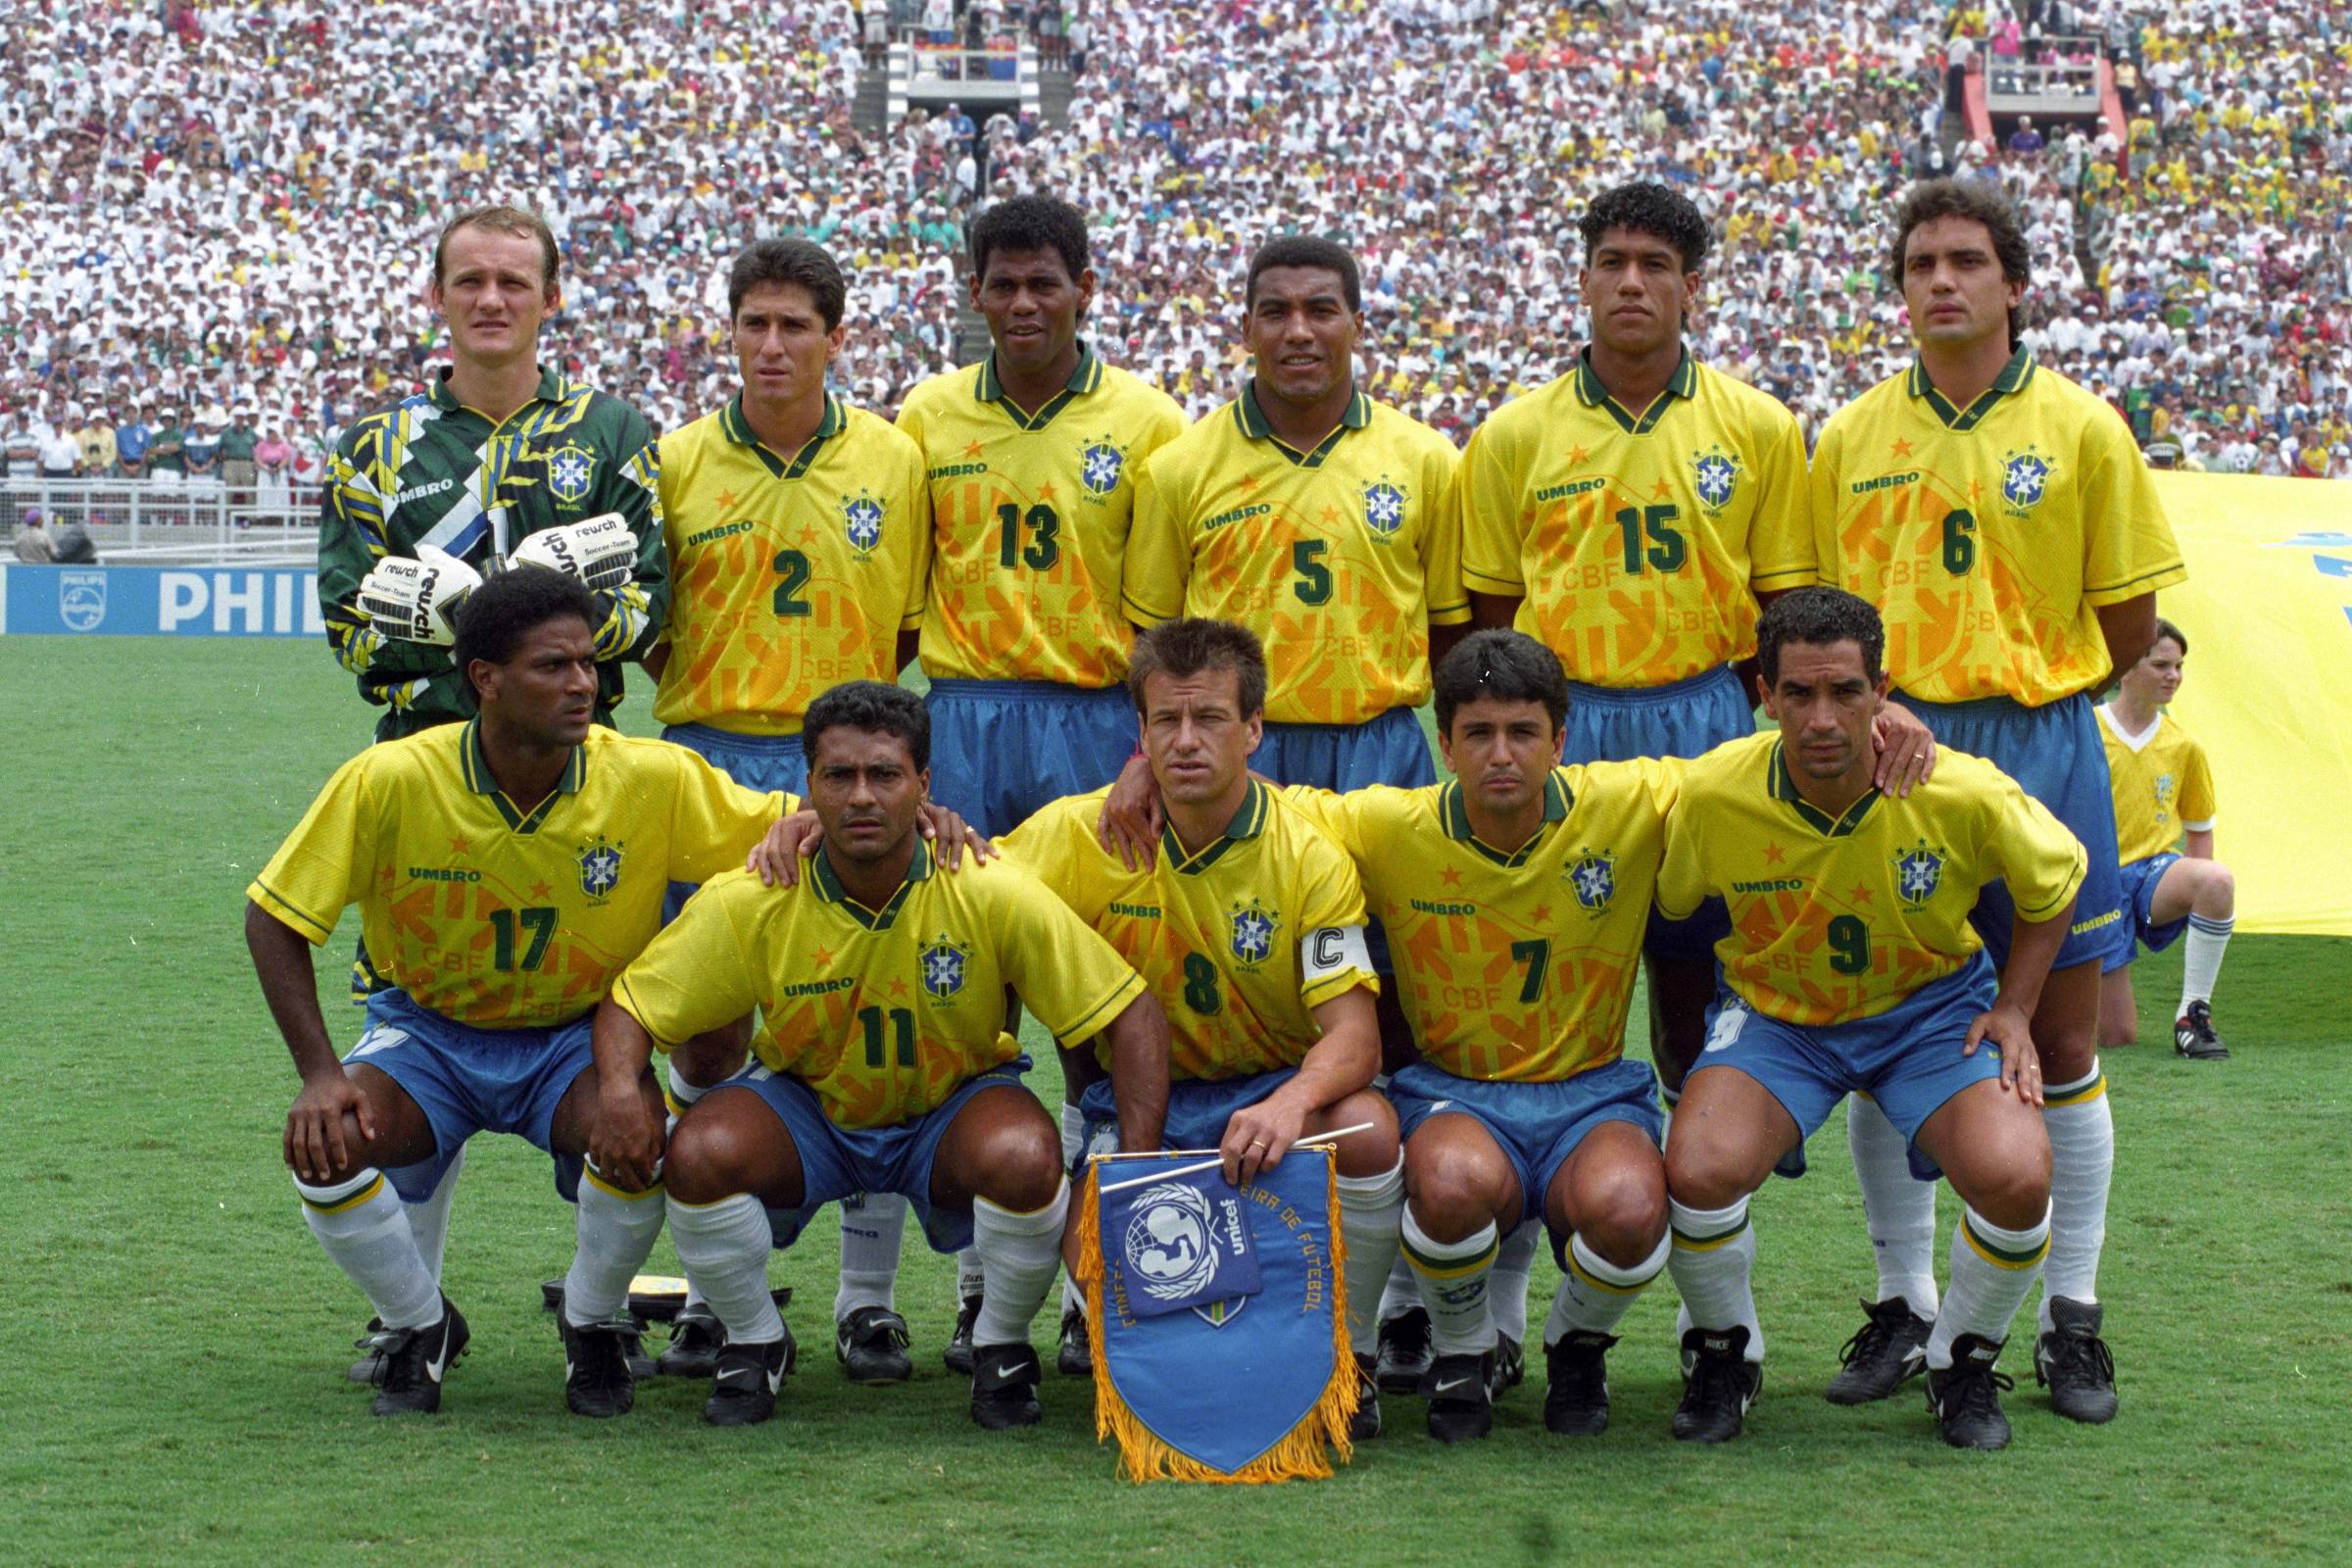 Camisa Seleção Brasileira Umbro 1994 Dunga 8 Cbf Amarela Tri